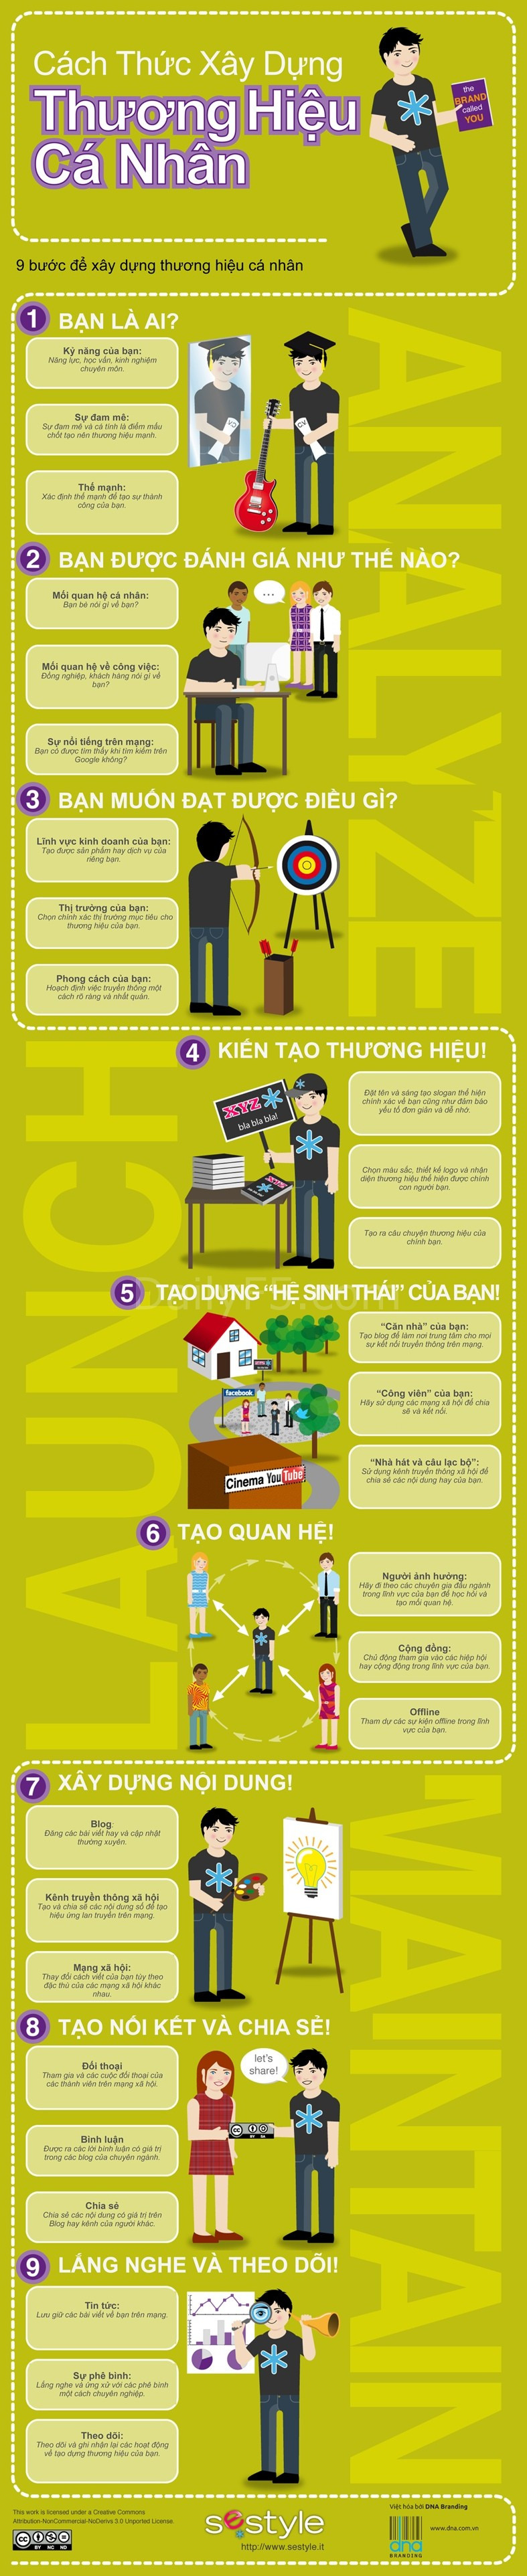 infographic-9-buoc-xay-dung-thuong-hieu-ca-nhan